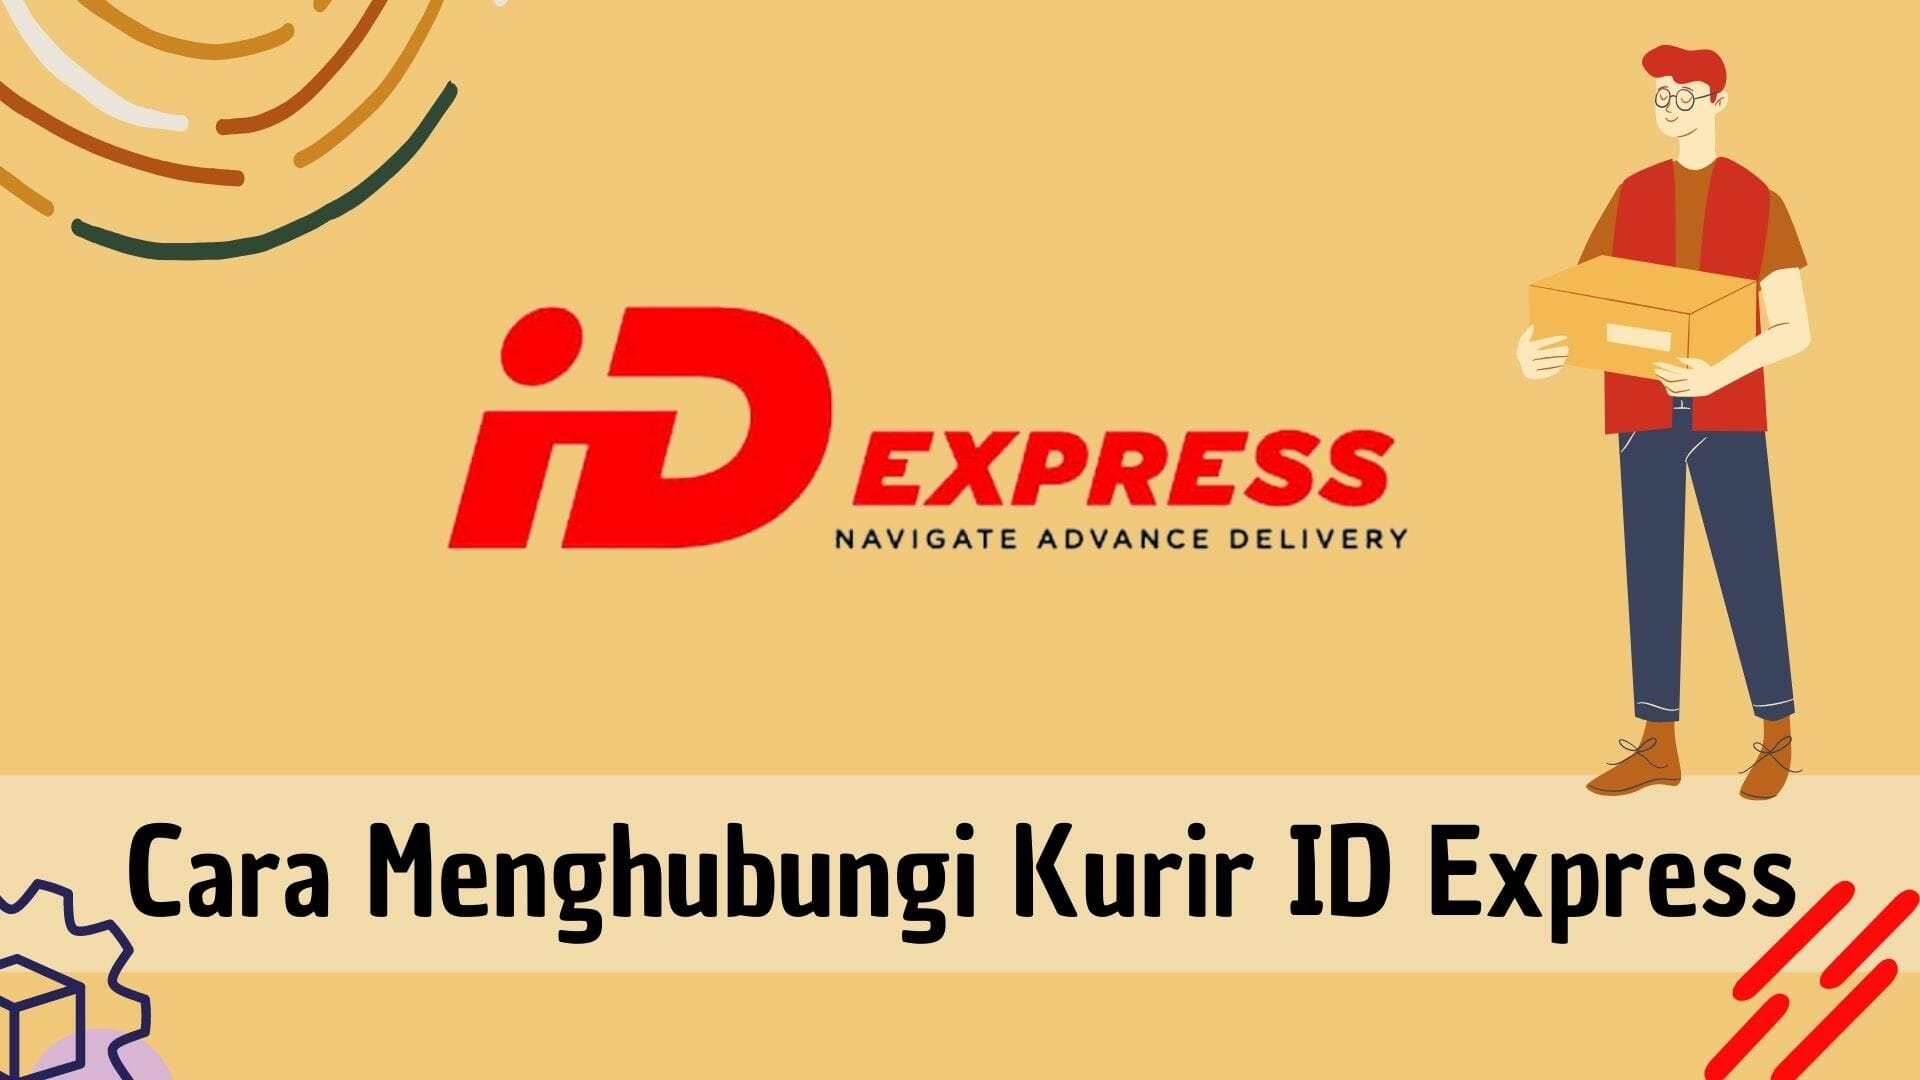 Cara Menghubungi Kurir ID Express